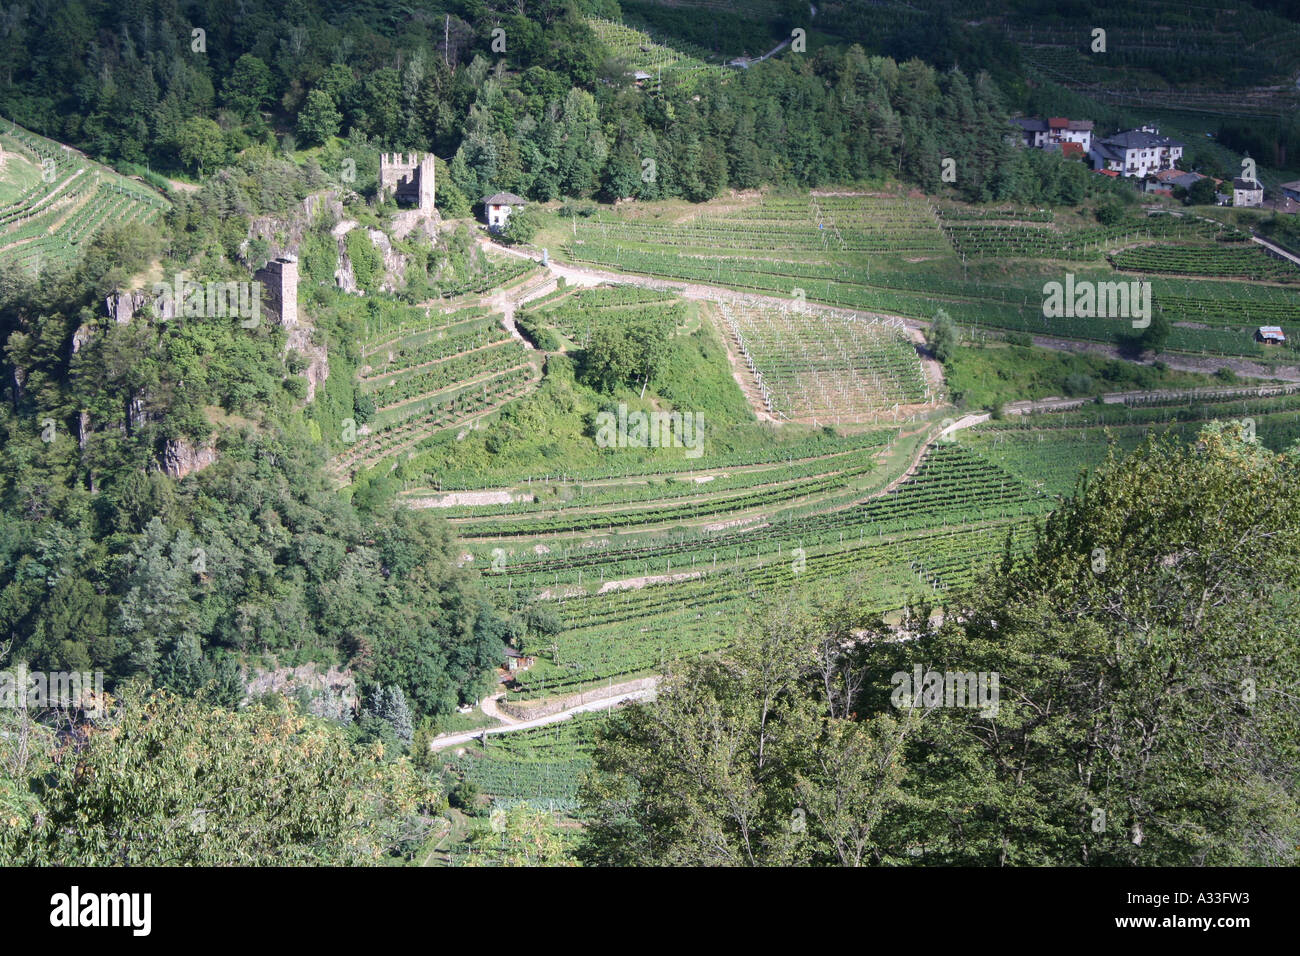 Terraced vineyards at Castello di Segonzano in the Val di Cembra, Trentino, Italy Stock Photo